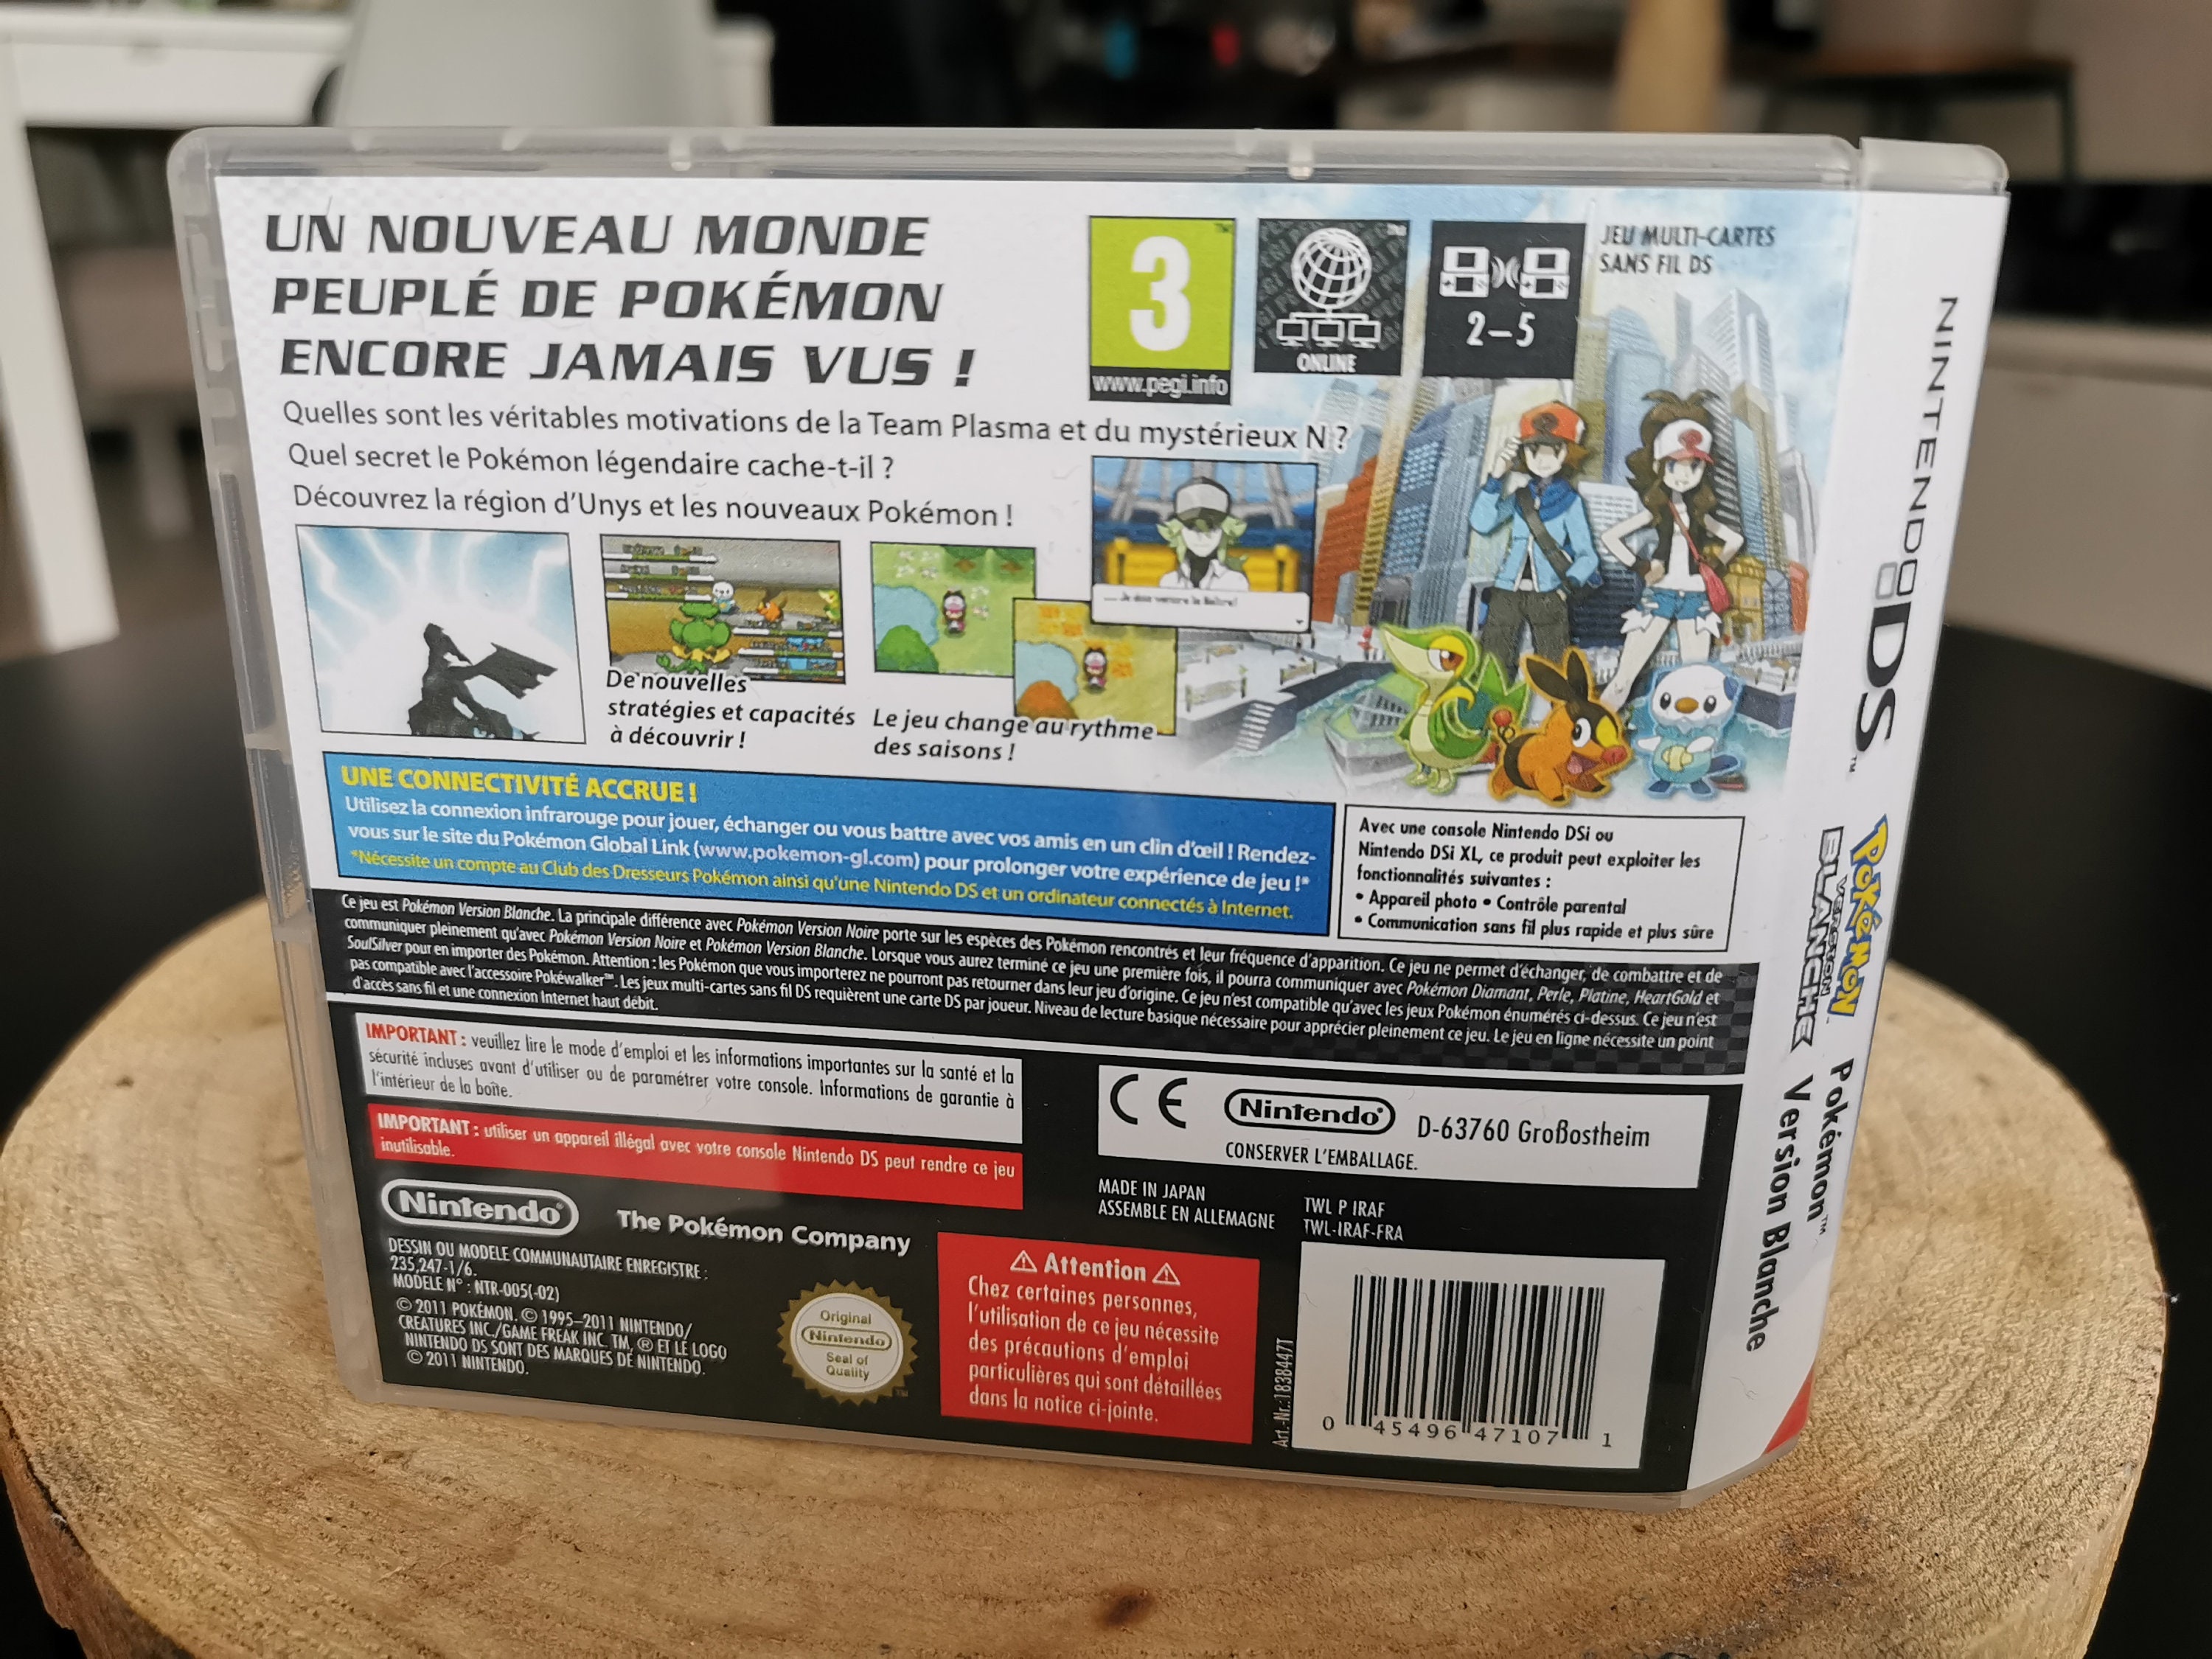 Pokemon White Version - Nds : : Games e Consoles